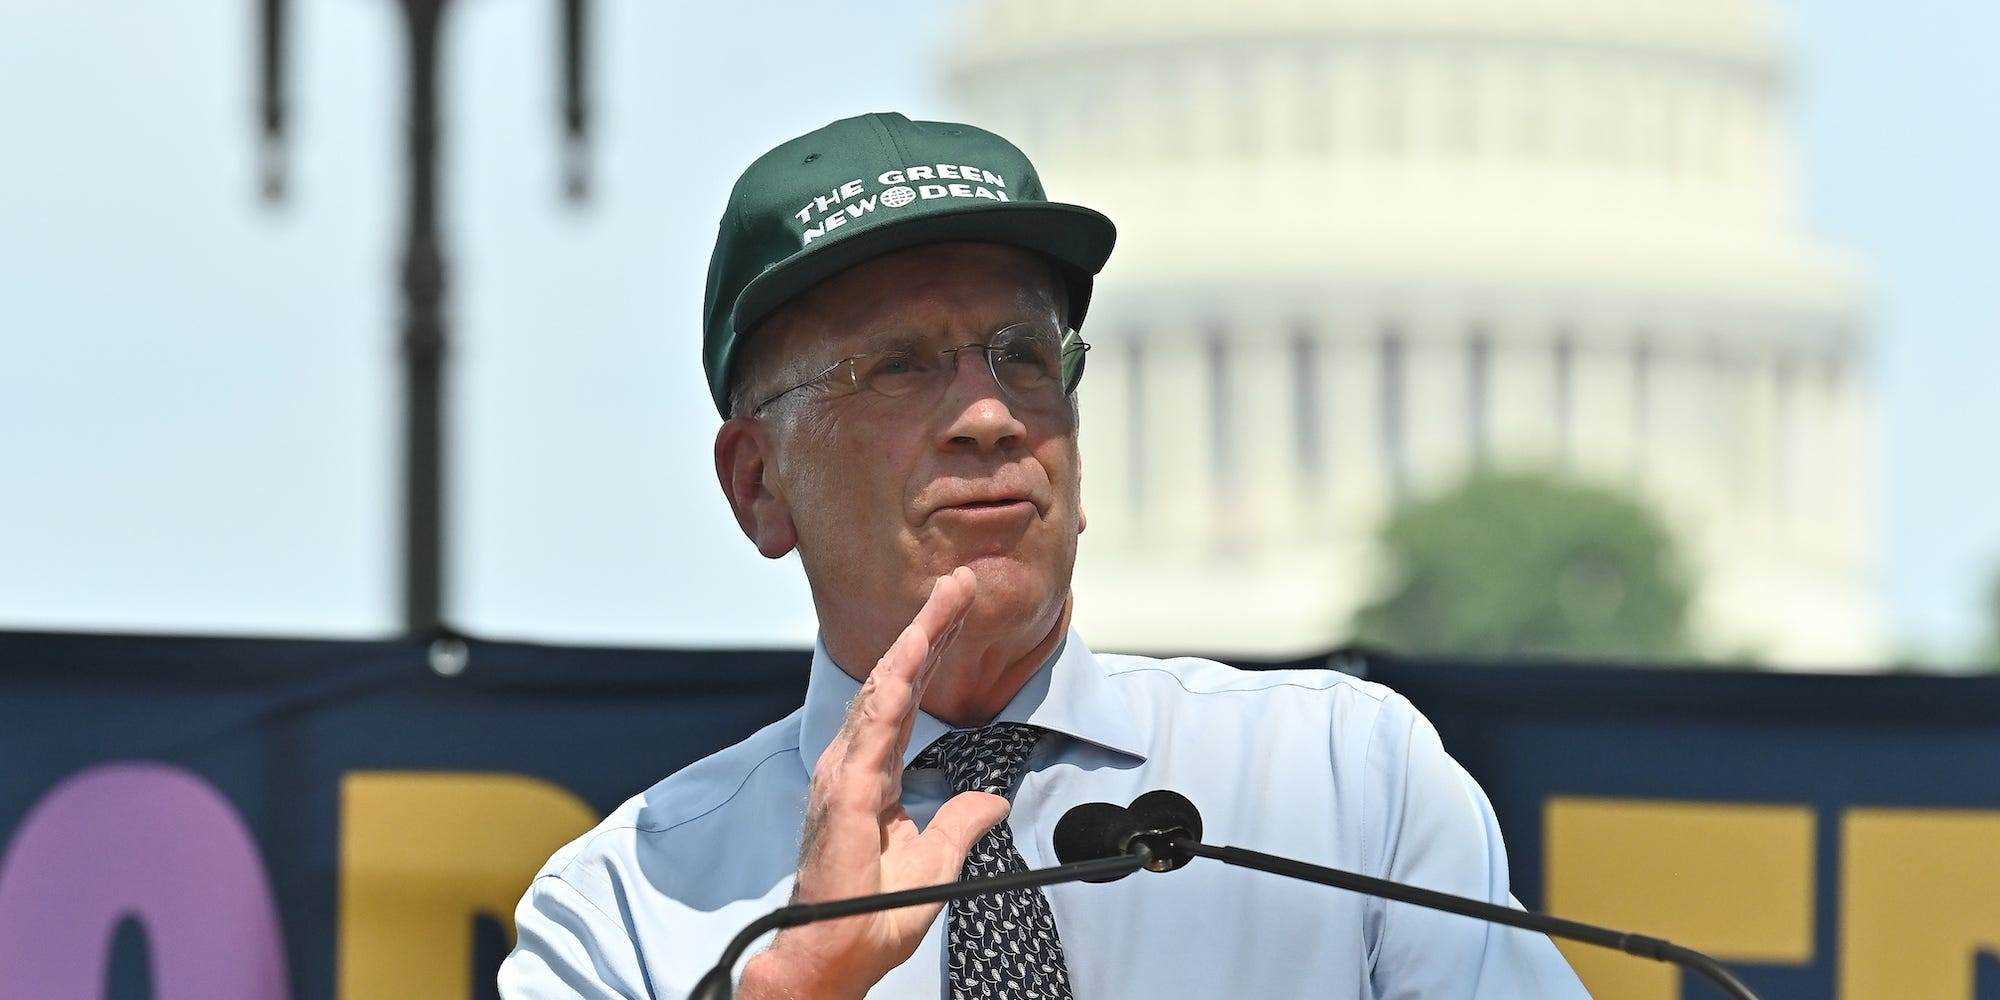 Der Abgeordnete Peter Welch spricht bei einer Klimakundgebung am 20. Juli 2021 in Washington, DC.